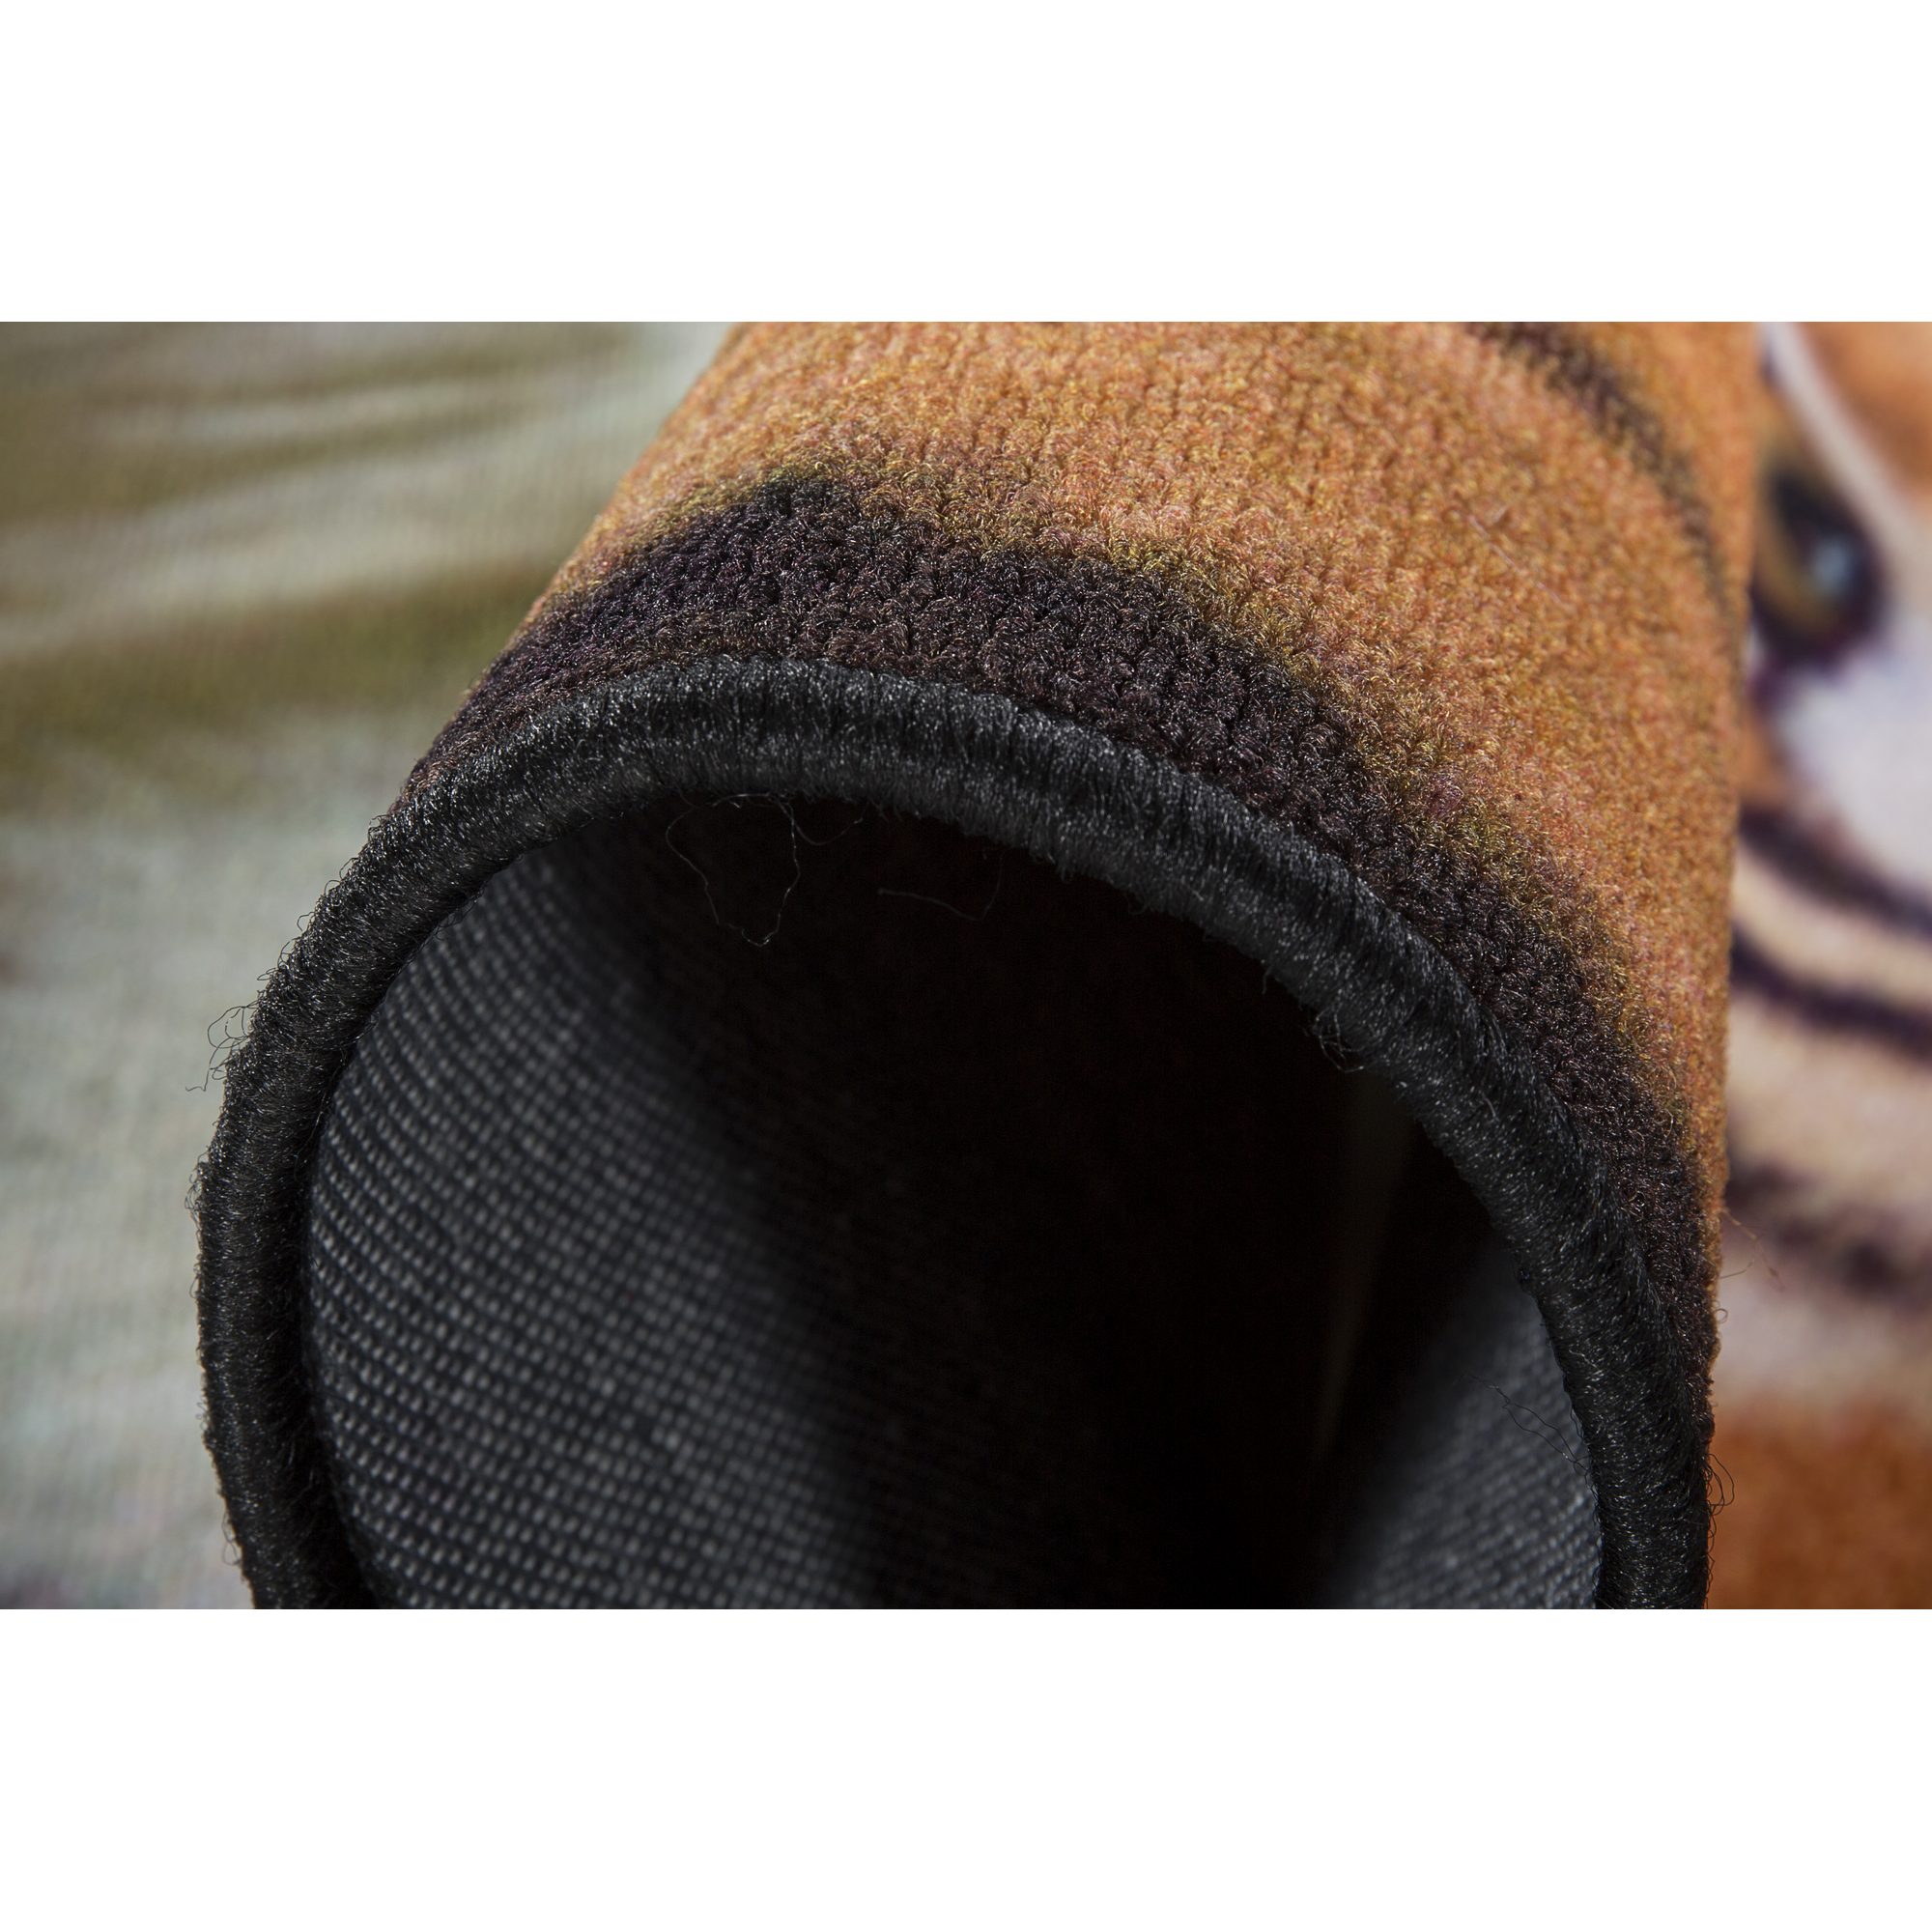 Teppich 'Tiger' schwarz/braun 100 x 150 cm + product picture